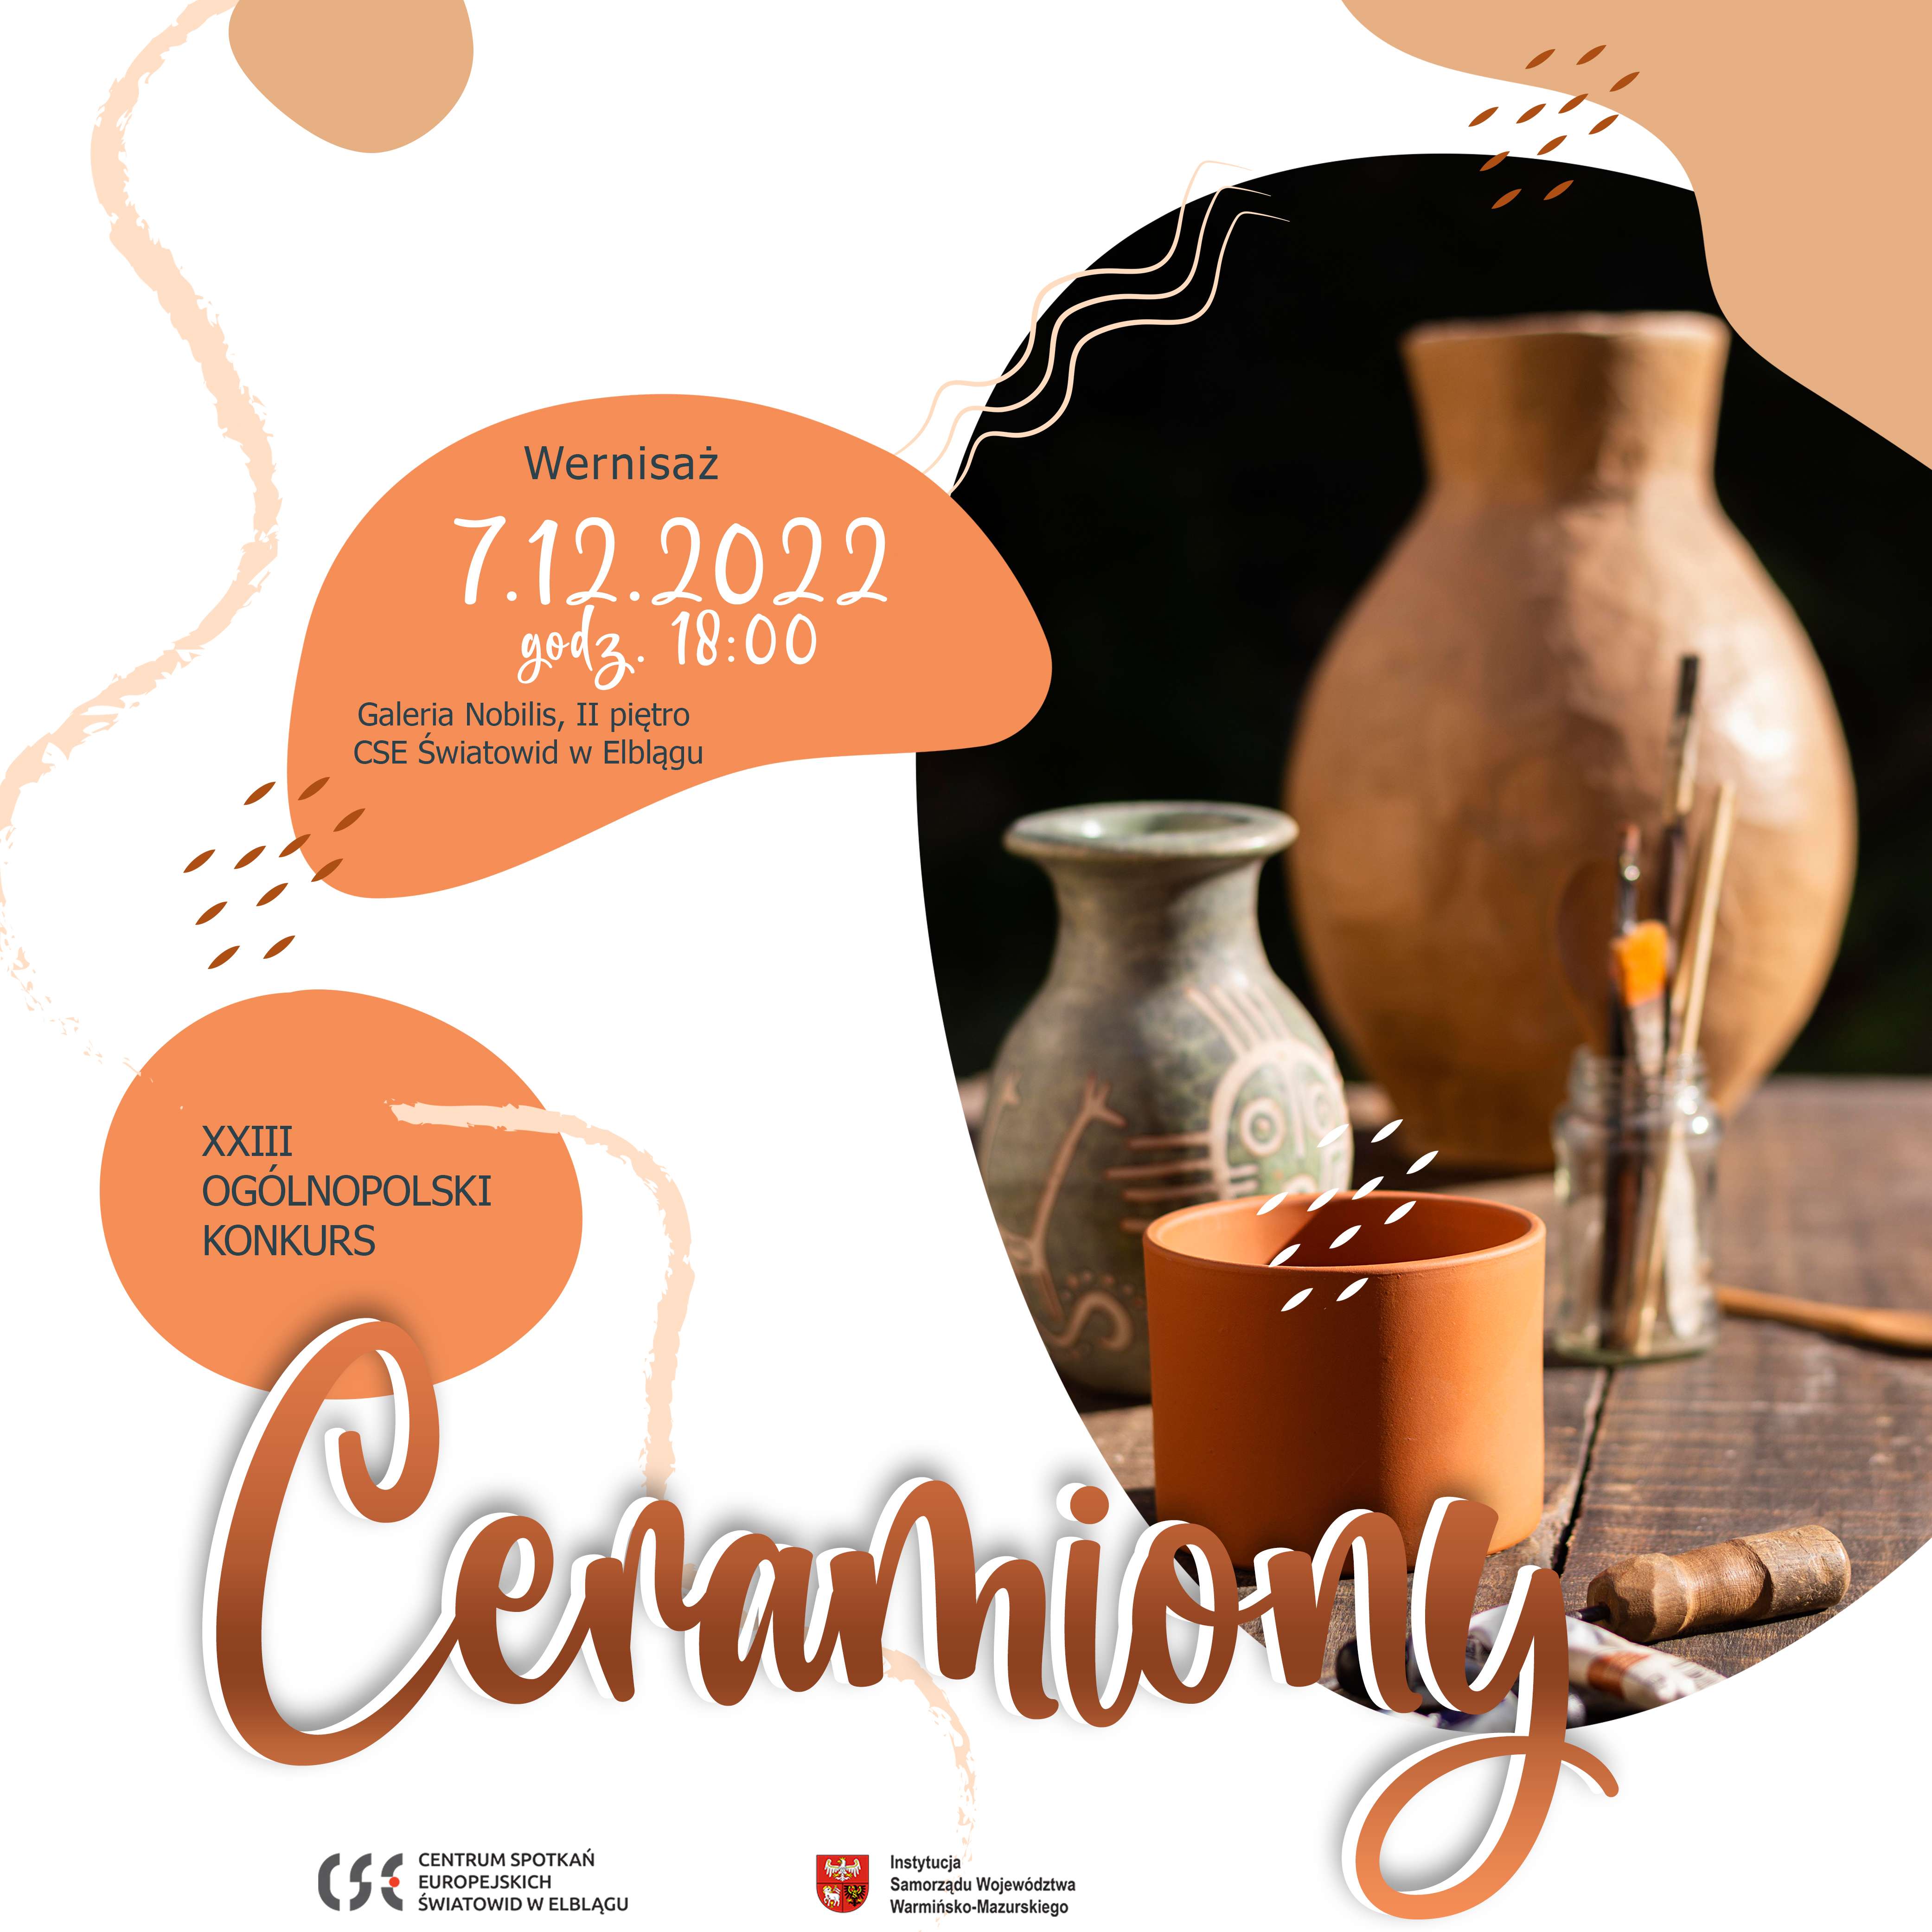 XXIII Ogólnopolskiego Konkursu Ceramicznego „Ceramiony” | PROTOKÓŁ Z OBRAD JURY